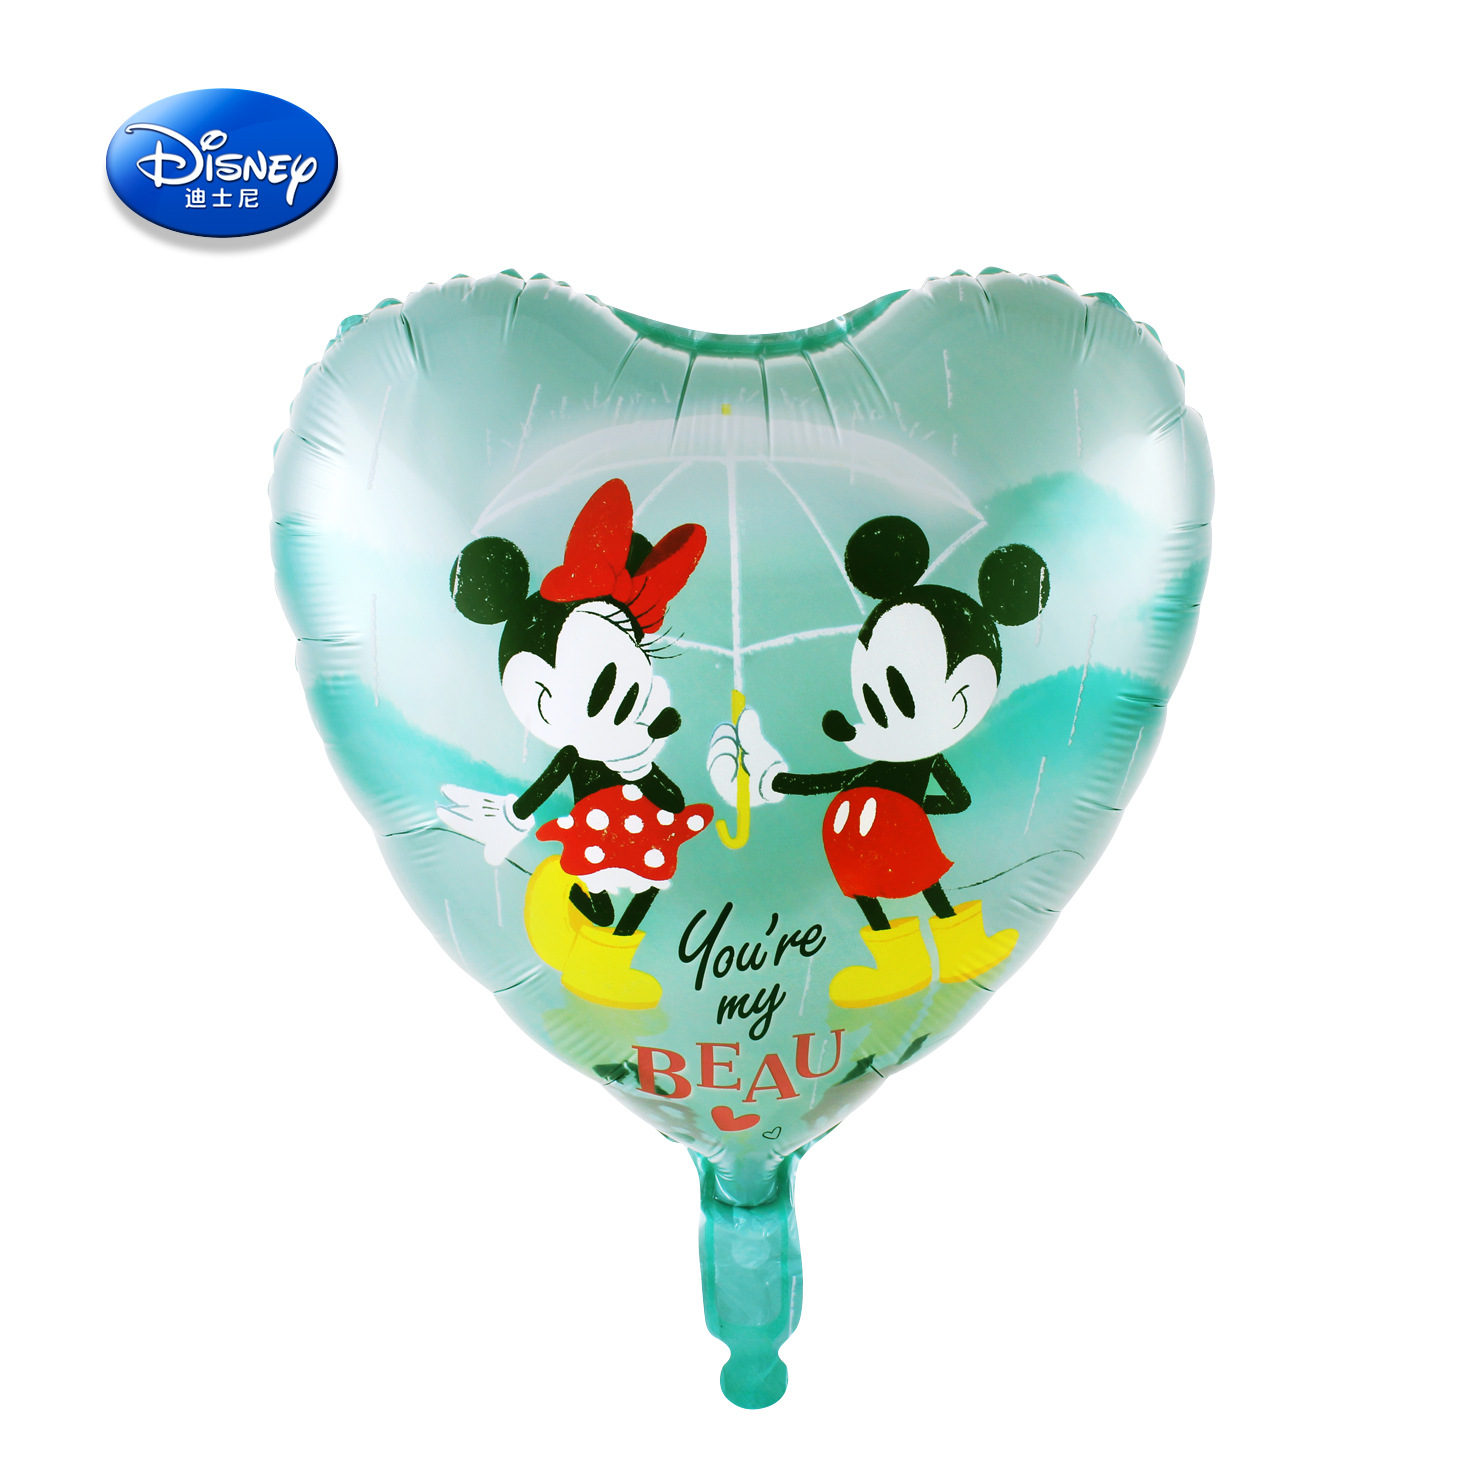 Globo con aire Mickey y Minnie